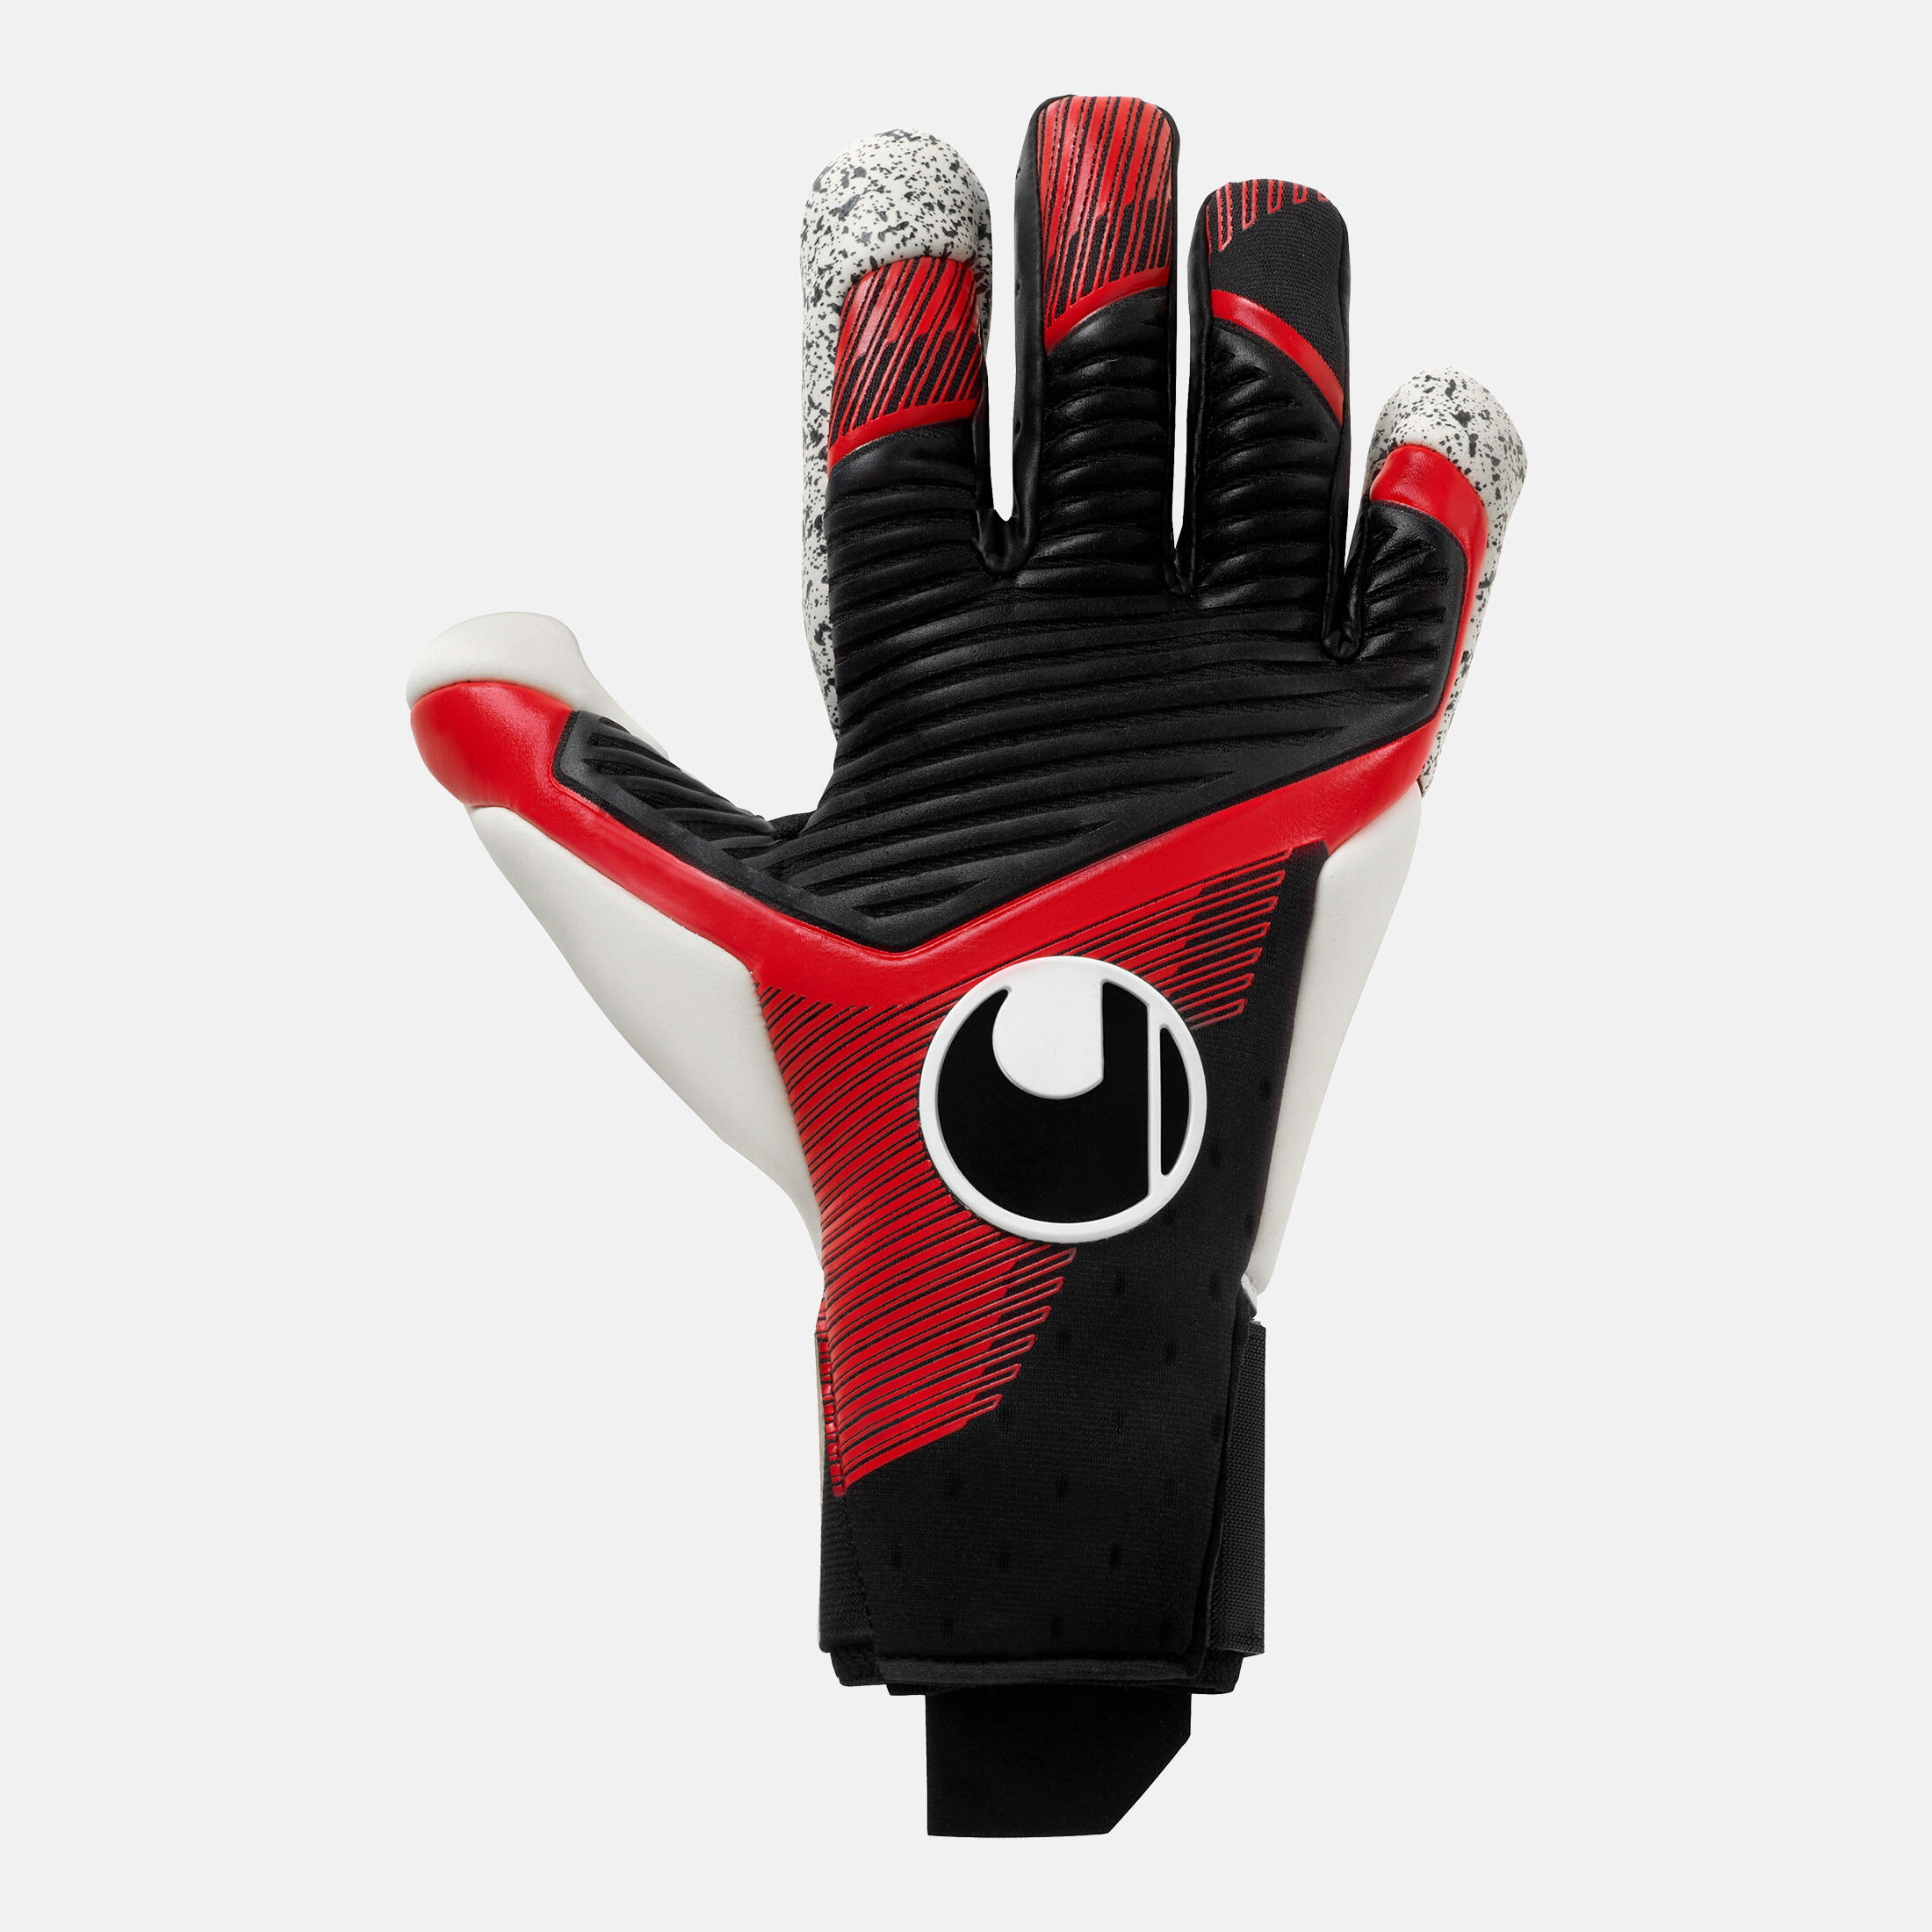 Uhlsport Powerline HYPERFLEX HN Junior Goalkeeper Gloves Size 6.5 Black/Red/Wht 1/4